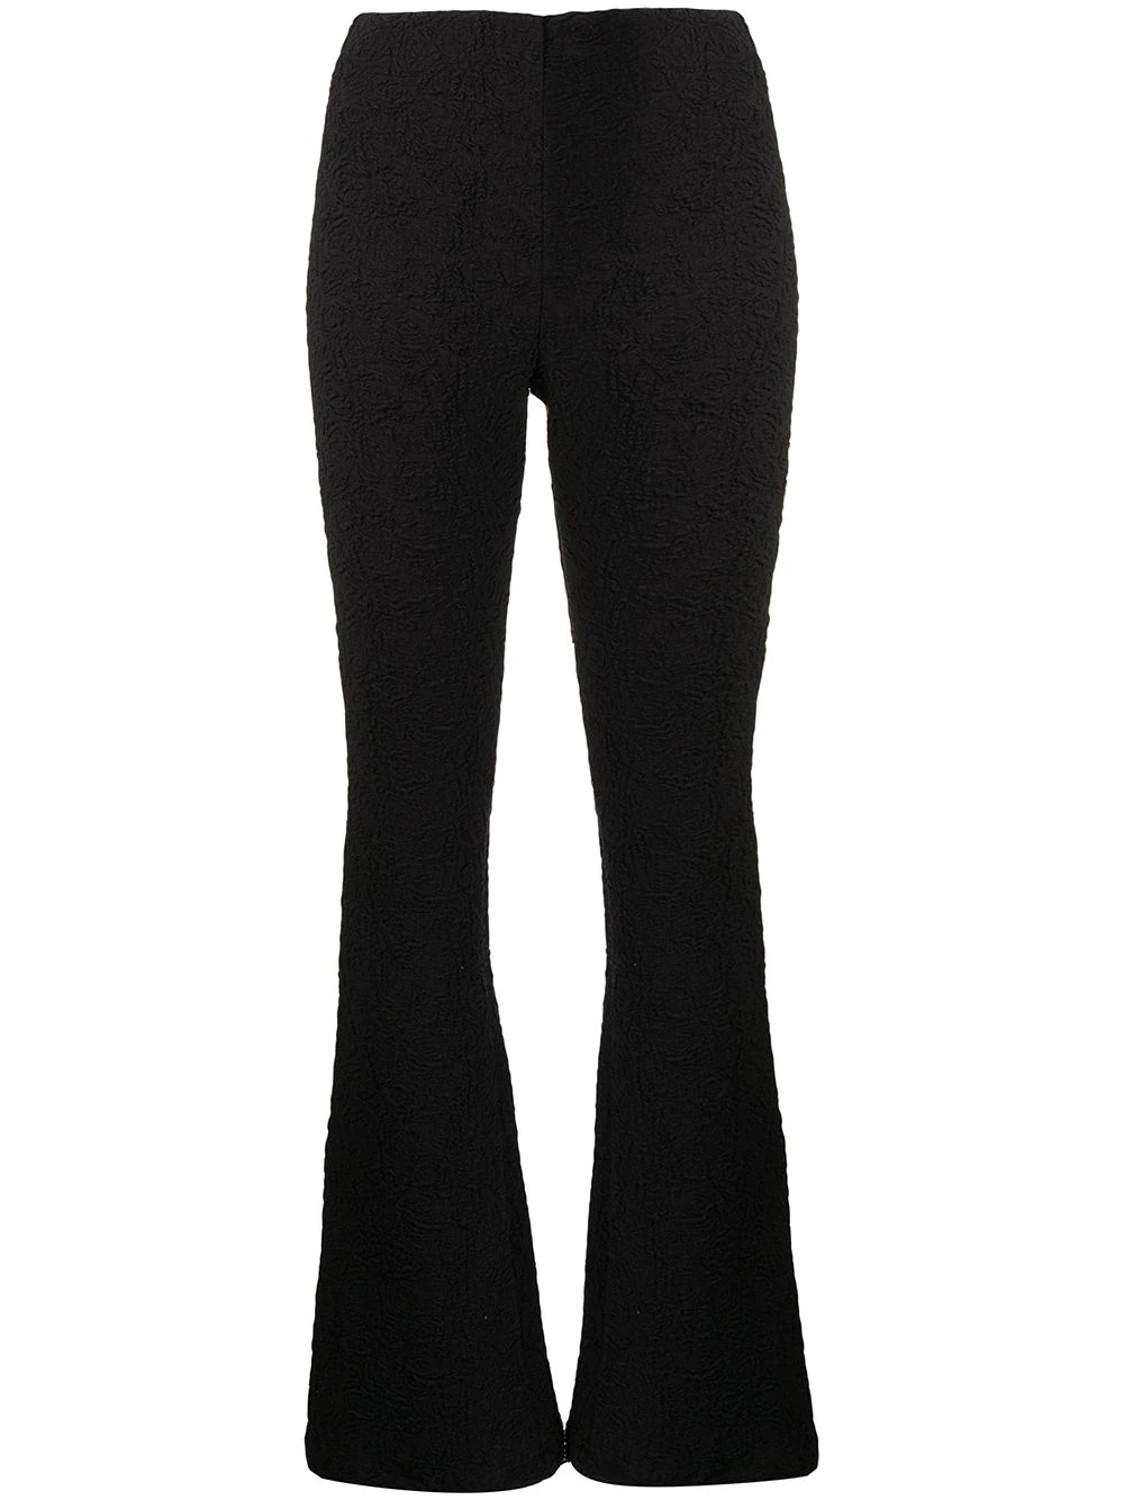 shop MSGM  Pantaloni: Pantaloni MSGM, fit aderente, vita alta, svasati, chiusura con zip laterale, finitura in rilievo.

Composizione: 75% cotone, 25% poliammide. number 2313